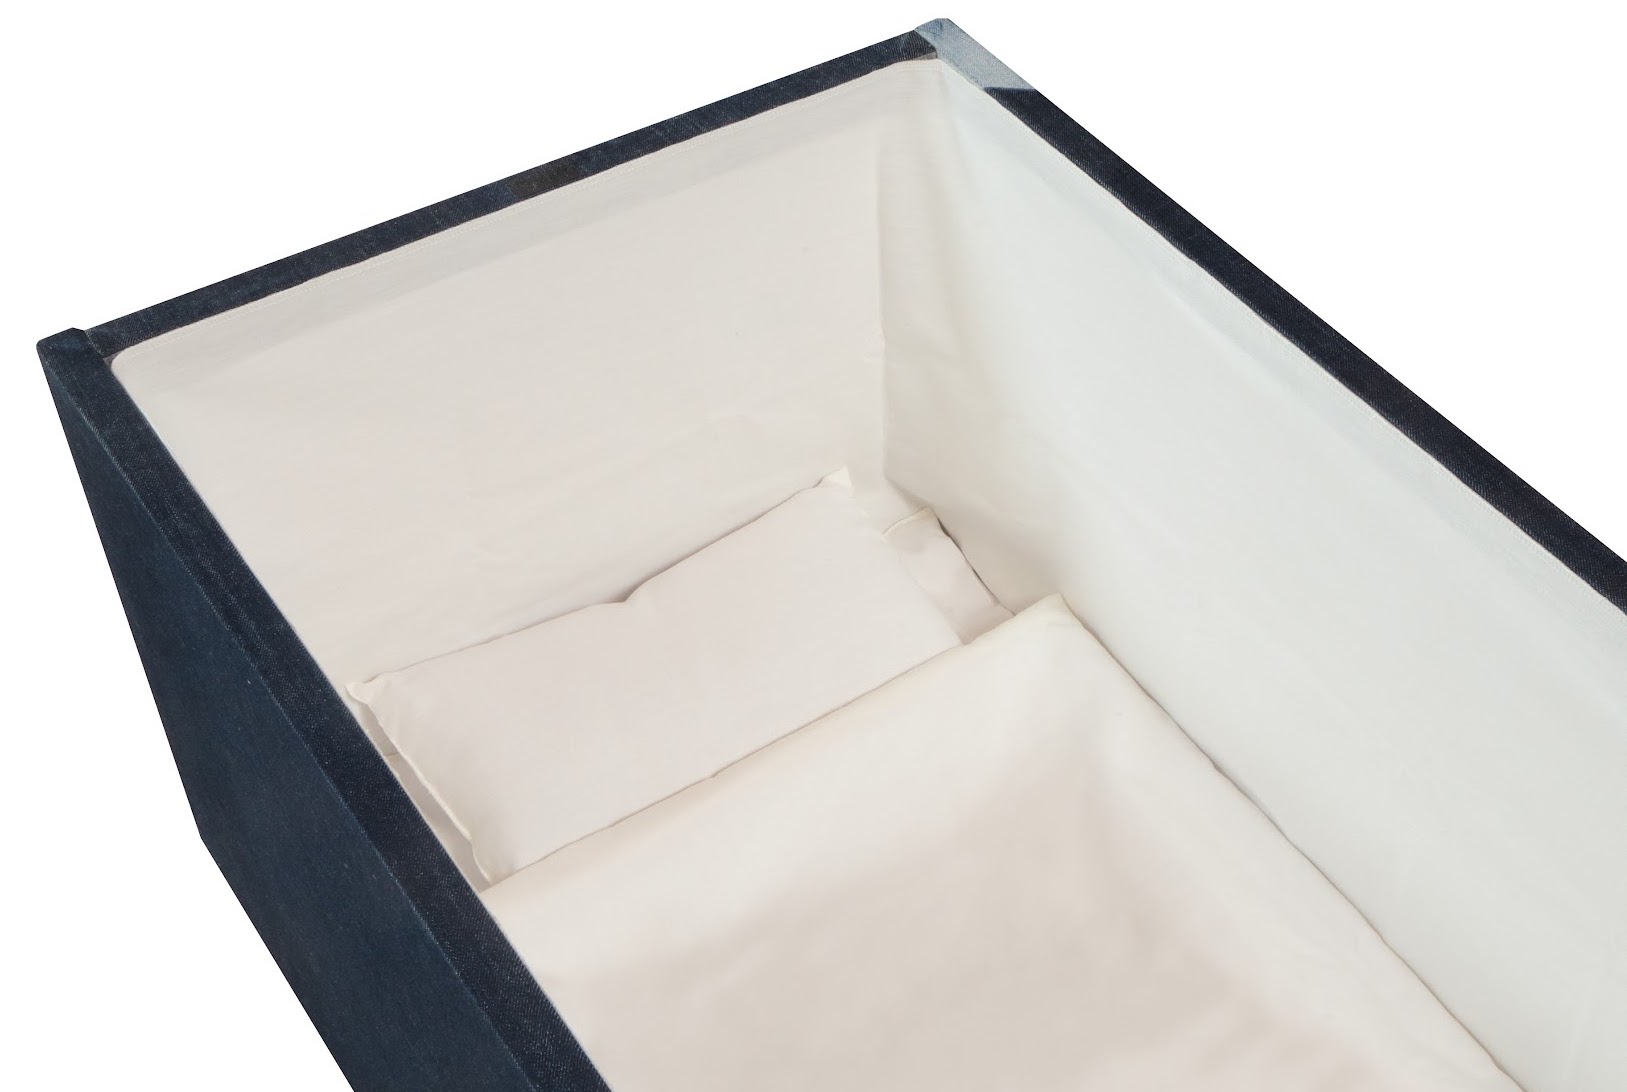 CAND JAPAN人間のための最後の暖かさの火葬の壷-大人の葬儀の壷二重の人々の棺の箱の彫刻の風景のパターン